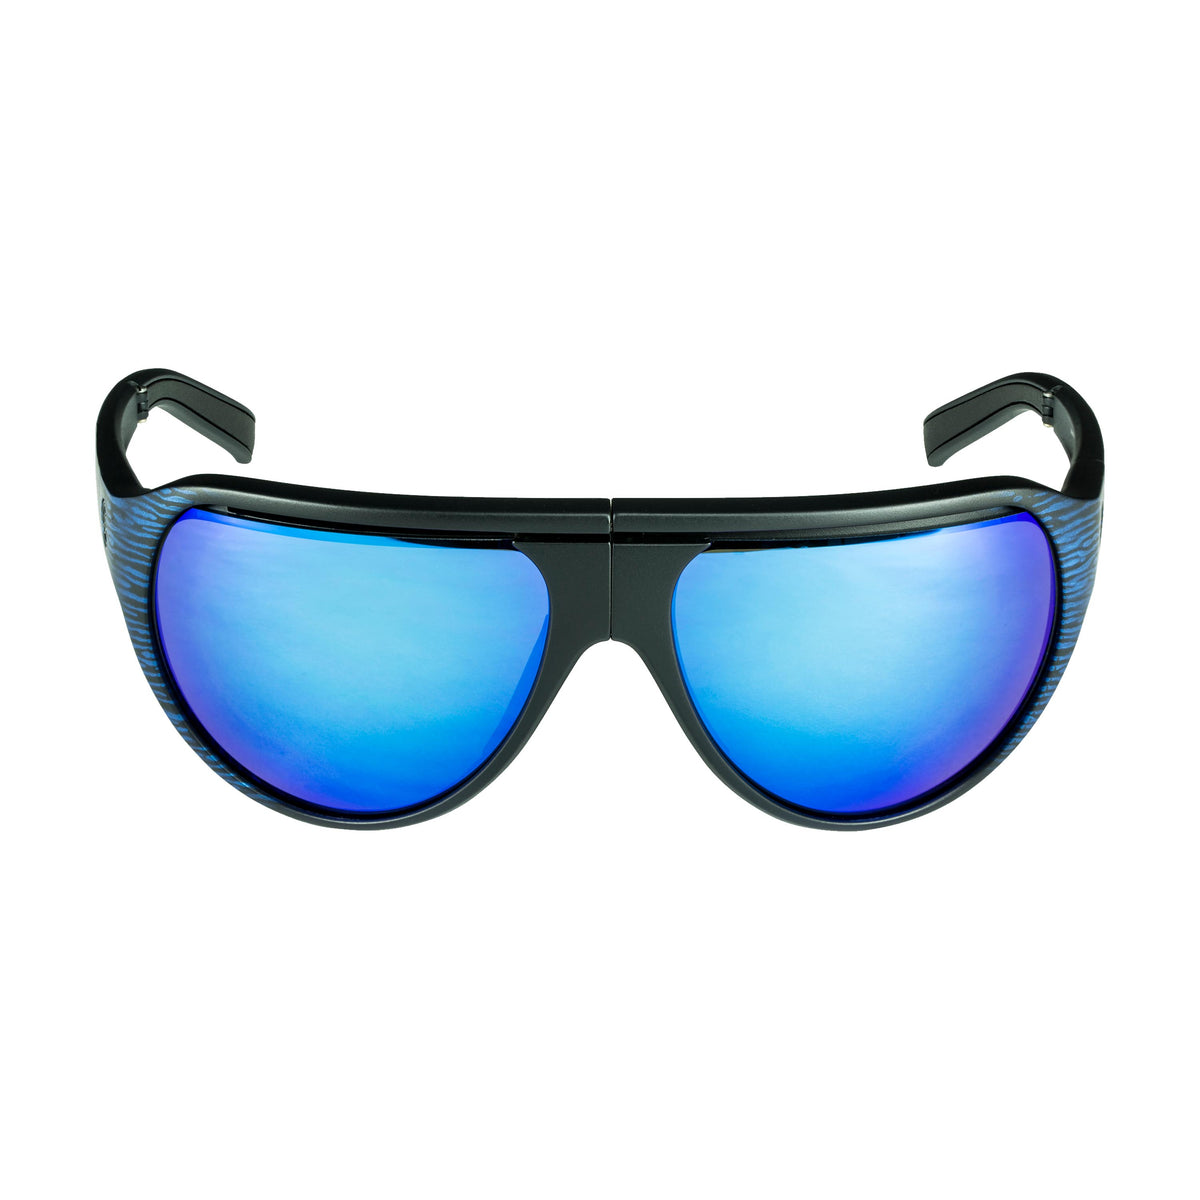 Popticals, Premium Compact Sunglasses, PopAir, 300010-EUUN, Polarized Sunglasses, Matte Blue/Black Wood Grain Frame, Blue Mirror Lenses, Front Tilt View